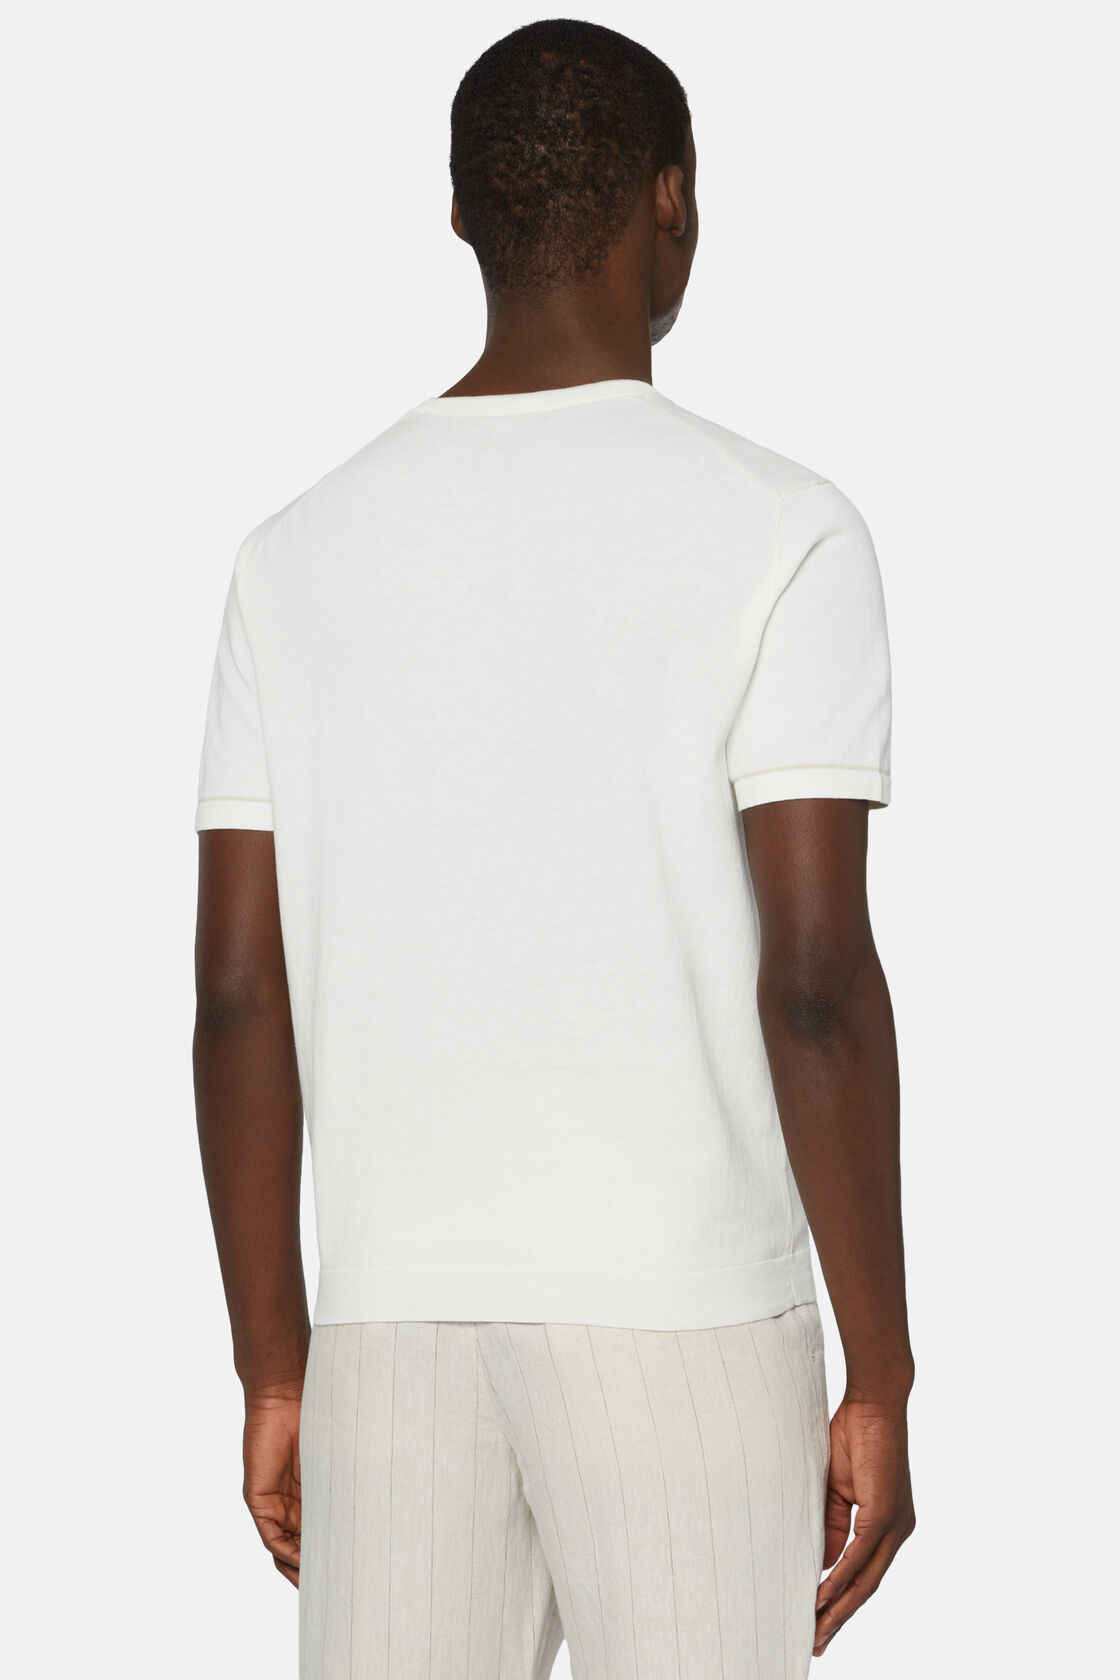 T-shirt Blanc En Maille Crêpe De Coton, Blanc, hi-res